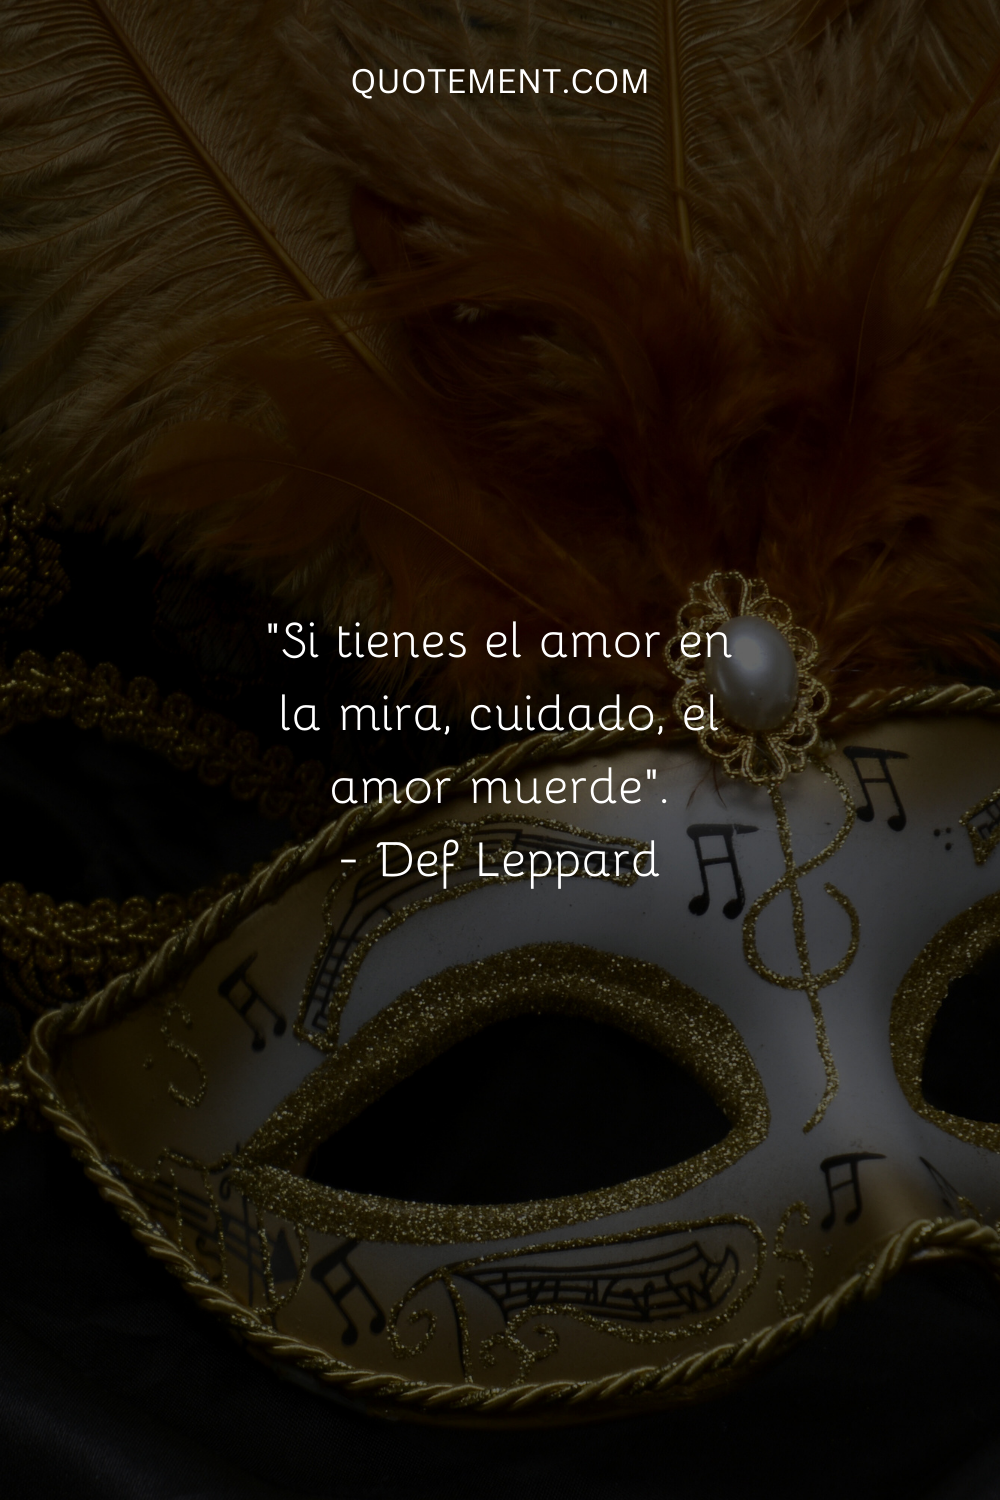 "Si tienes el amor en la mira, cuidado, el amor muerde". - Def Leppard